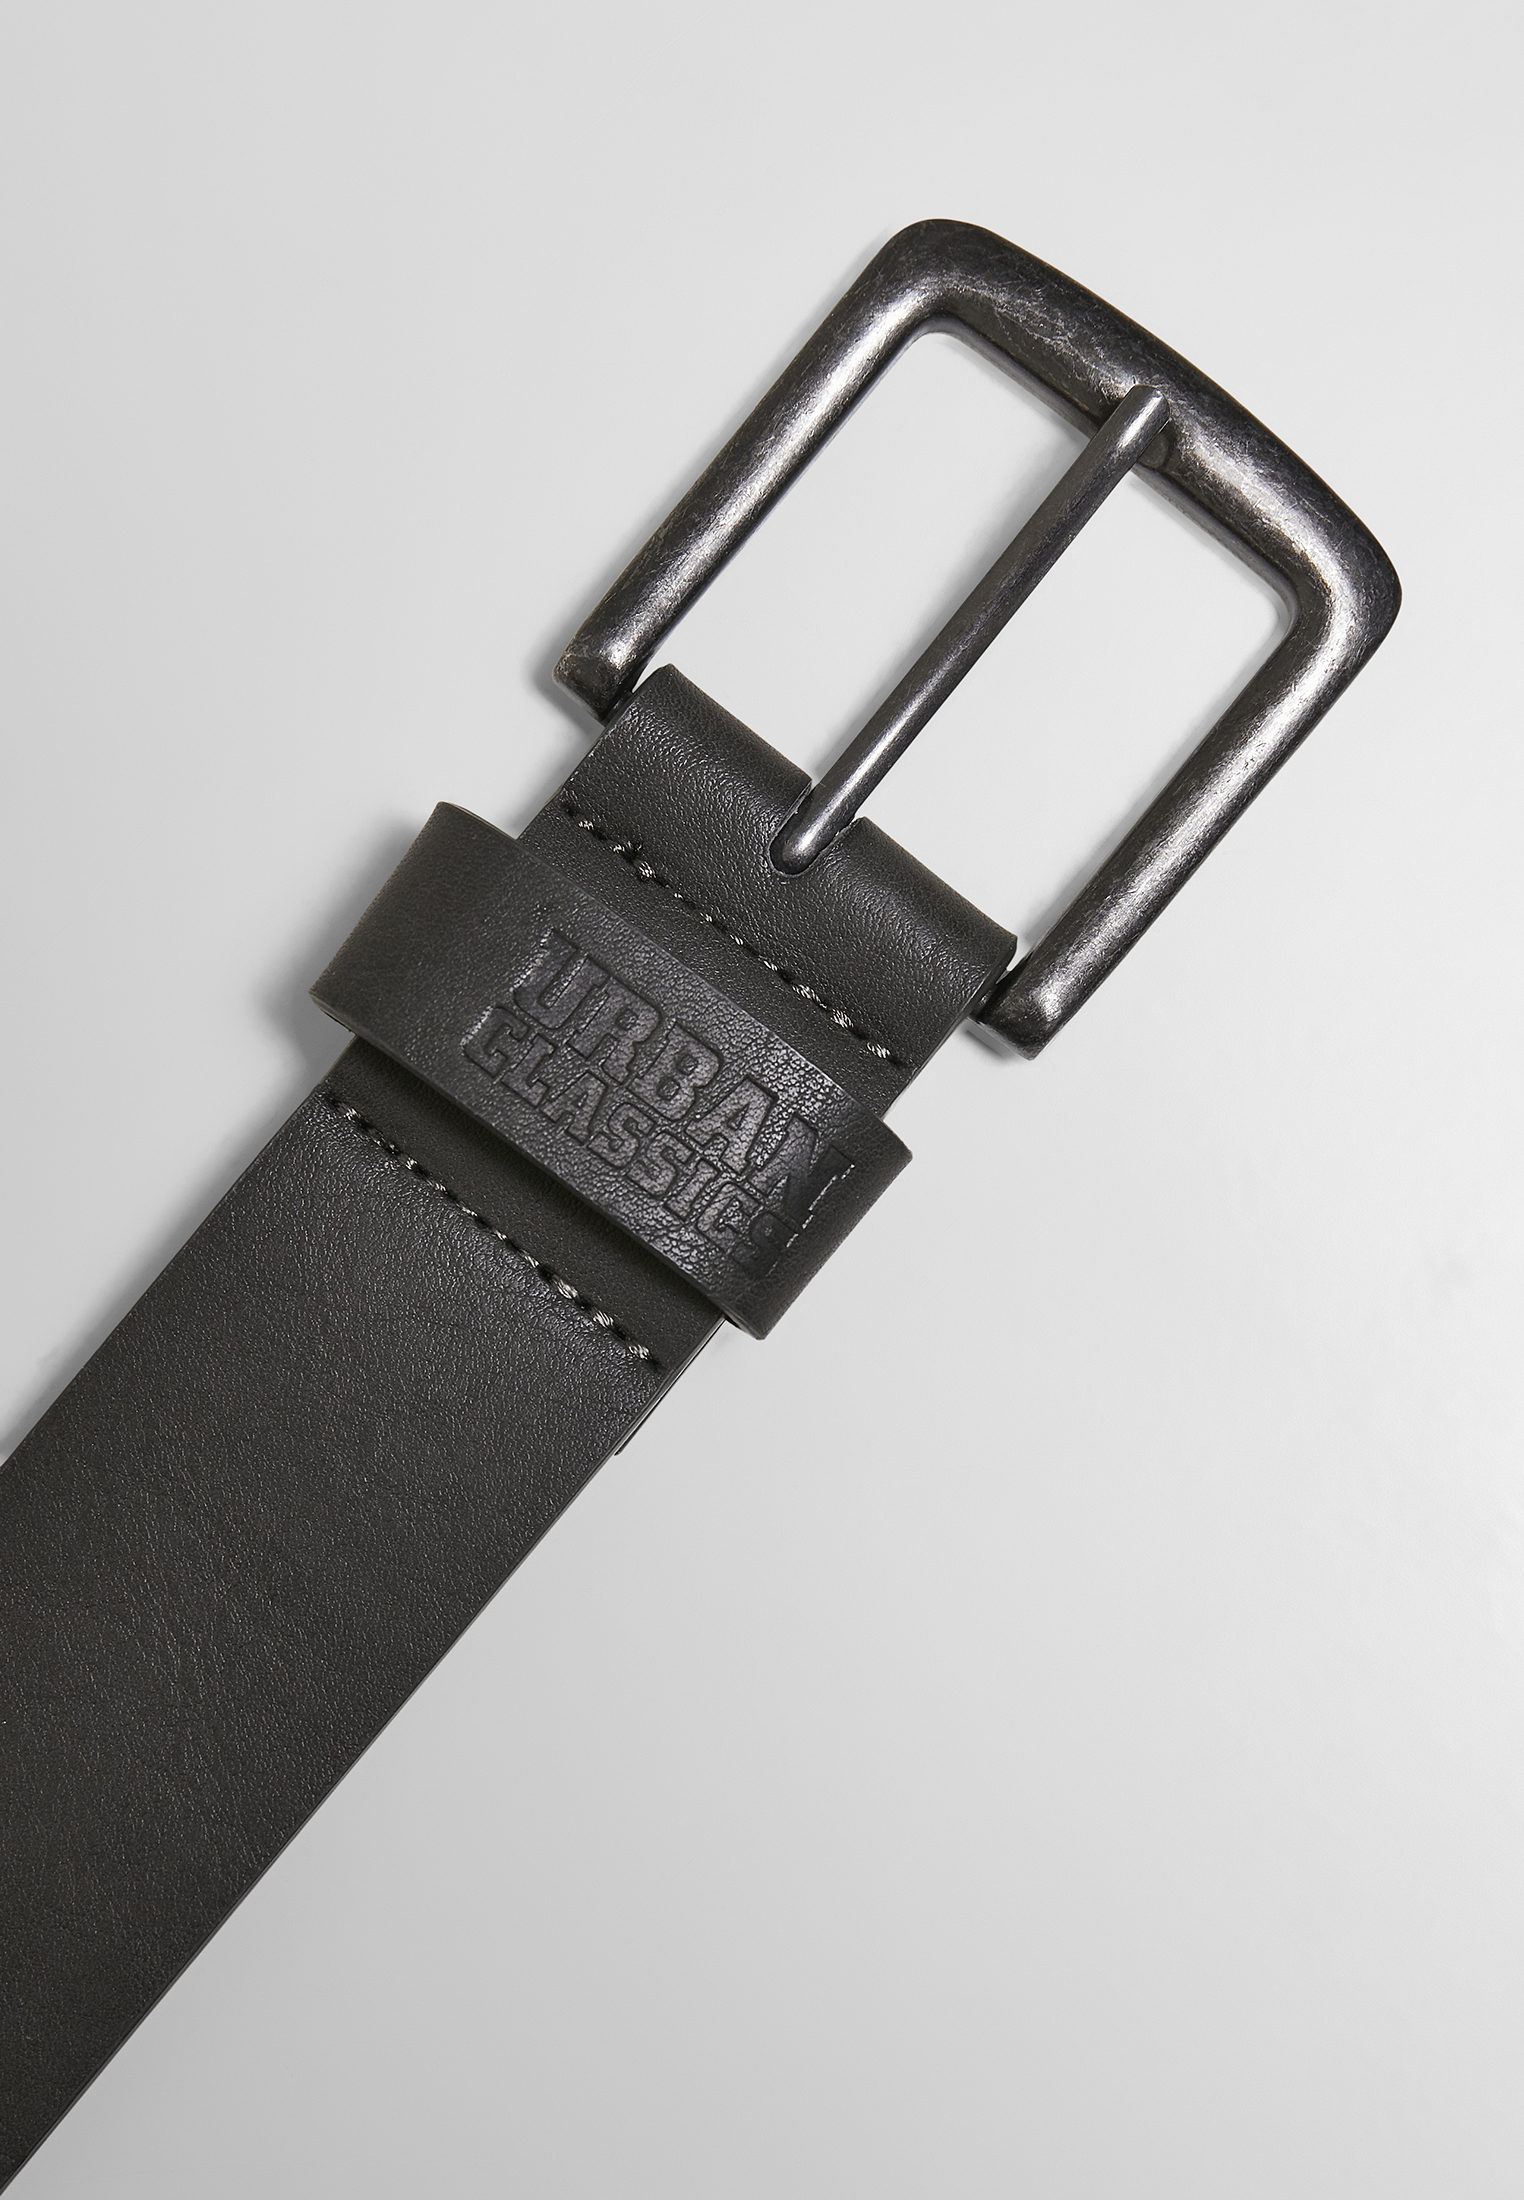 G?rtel Leather Imitation Belt in Farbe darkgrey